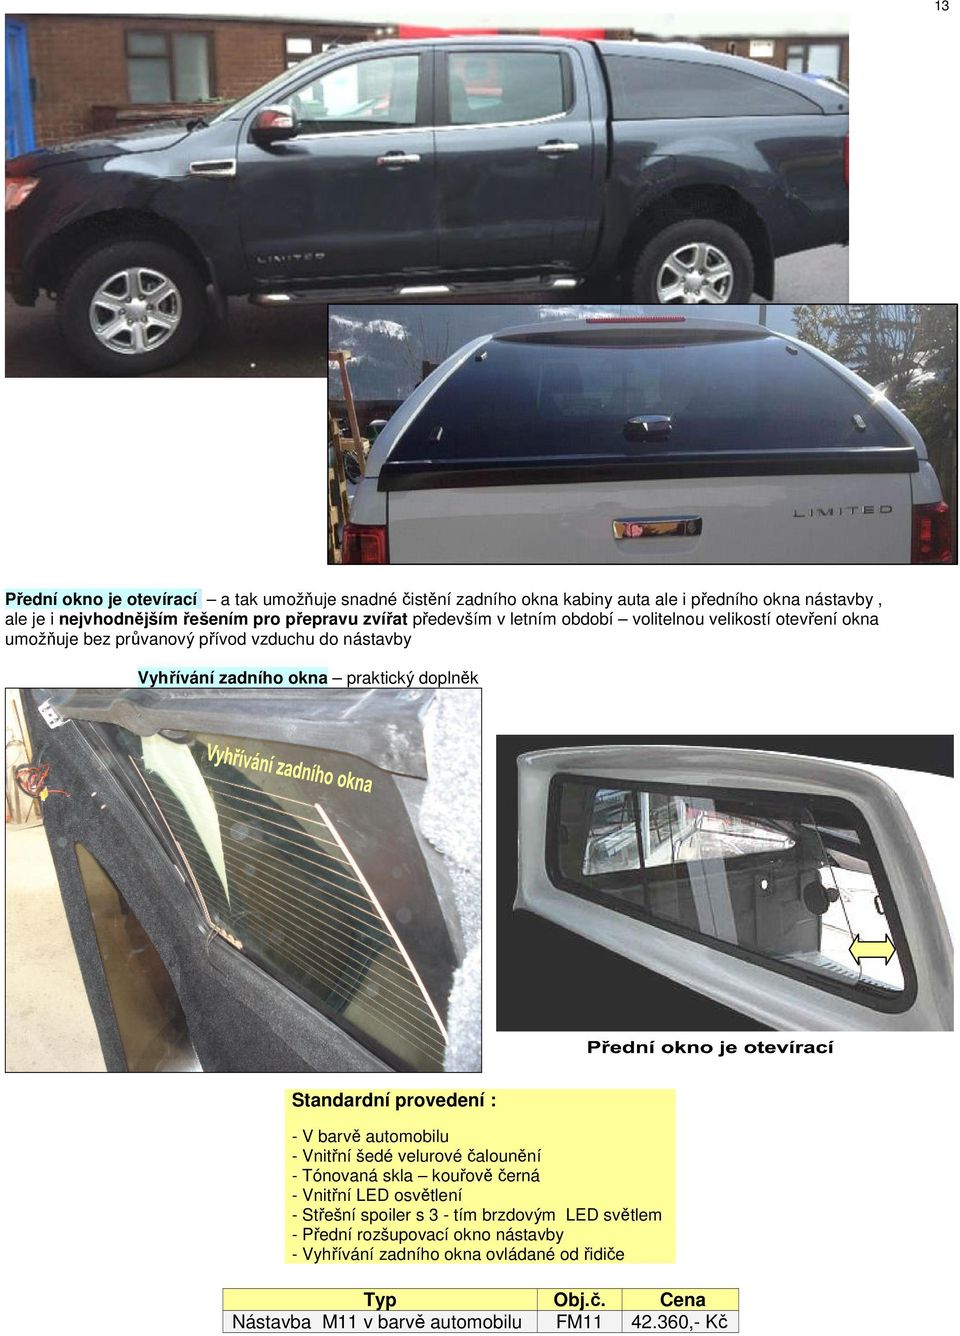 Standardní provedení : - V barvě automobilu - Vnitřní šedé velurové čalounění - Tónovaná skla kouřově černá - Vnitřní LED osvětlení - Střešní spoiler s 3 - tím